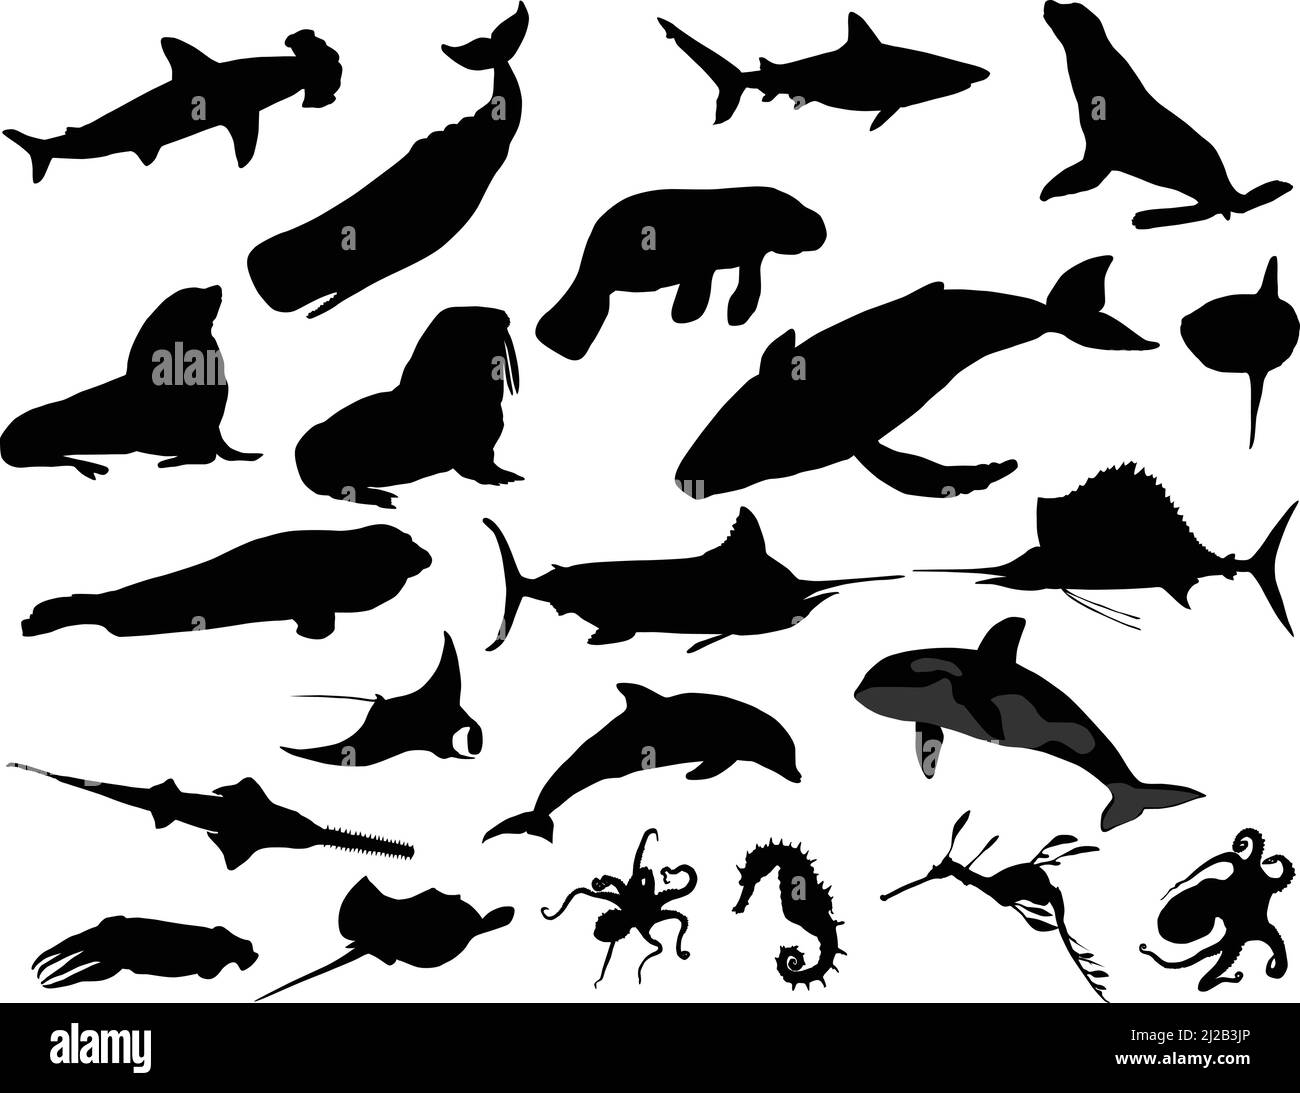 Collection de silhouettes d'animaux marins : baleine, requin, dauphin, pieuvre, phoque, phoque à fourrure, morse, orque, manta, skat, cheval de mer, marlin, espadon Illustration de Vecteur